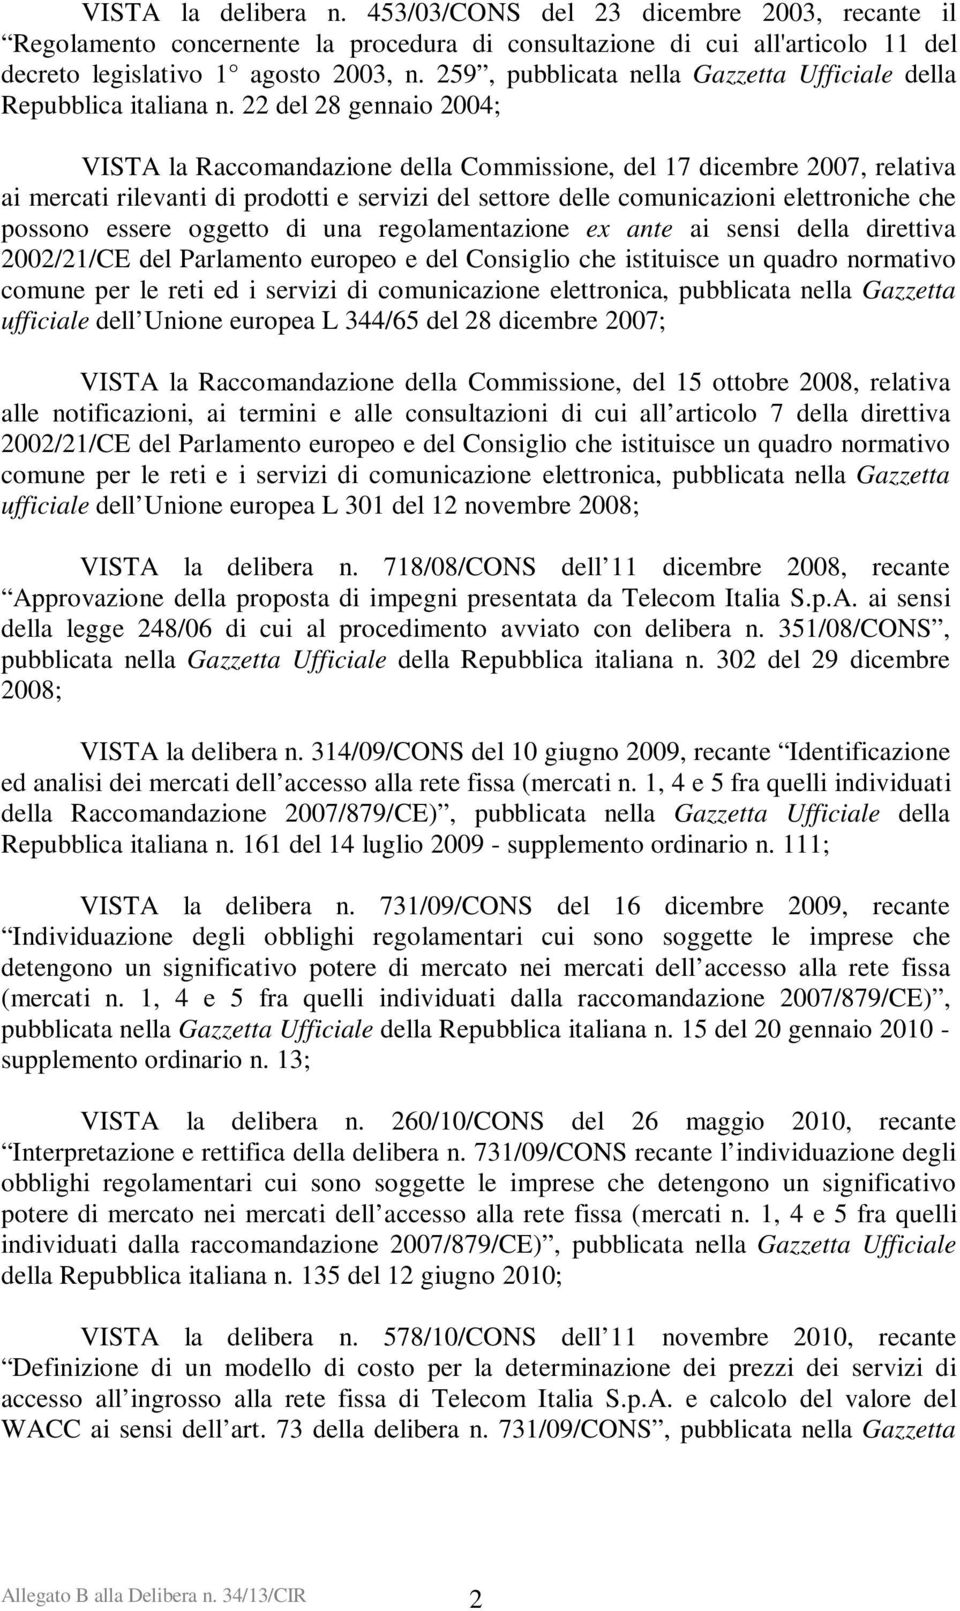 22 del 28 gennaio 2004; VISTA la Raccomandazione della Commissione, del 17 dicembre 2007, relativa ai mercati rilevanti di prodotti e servizi del settore delle comunicazioni elettroniche che possono